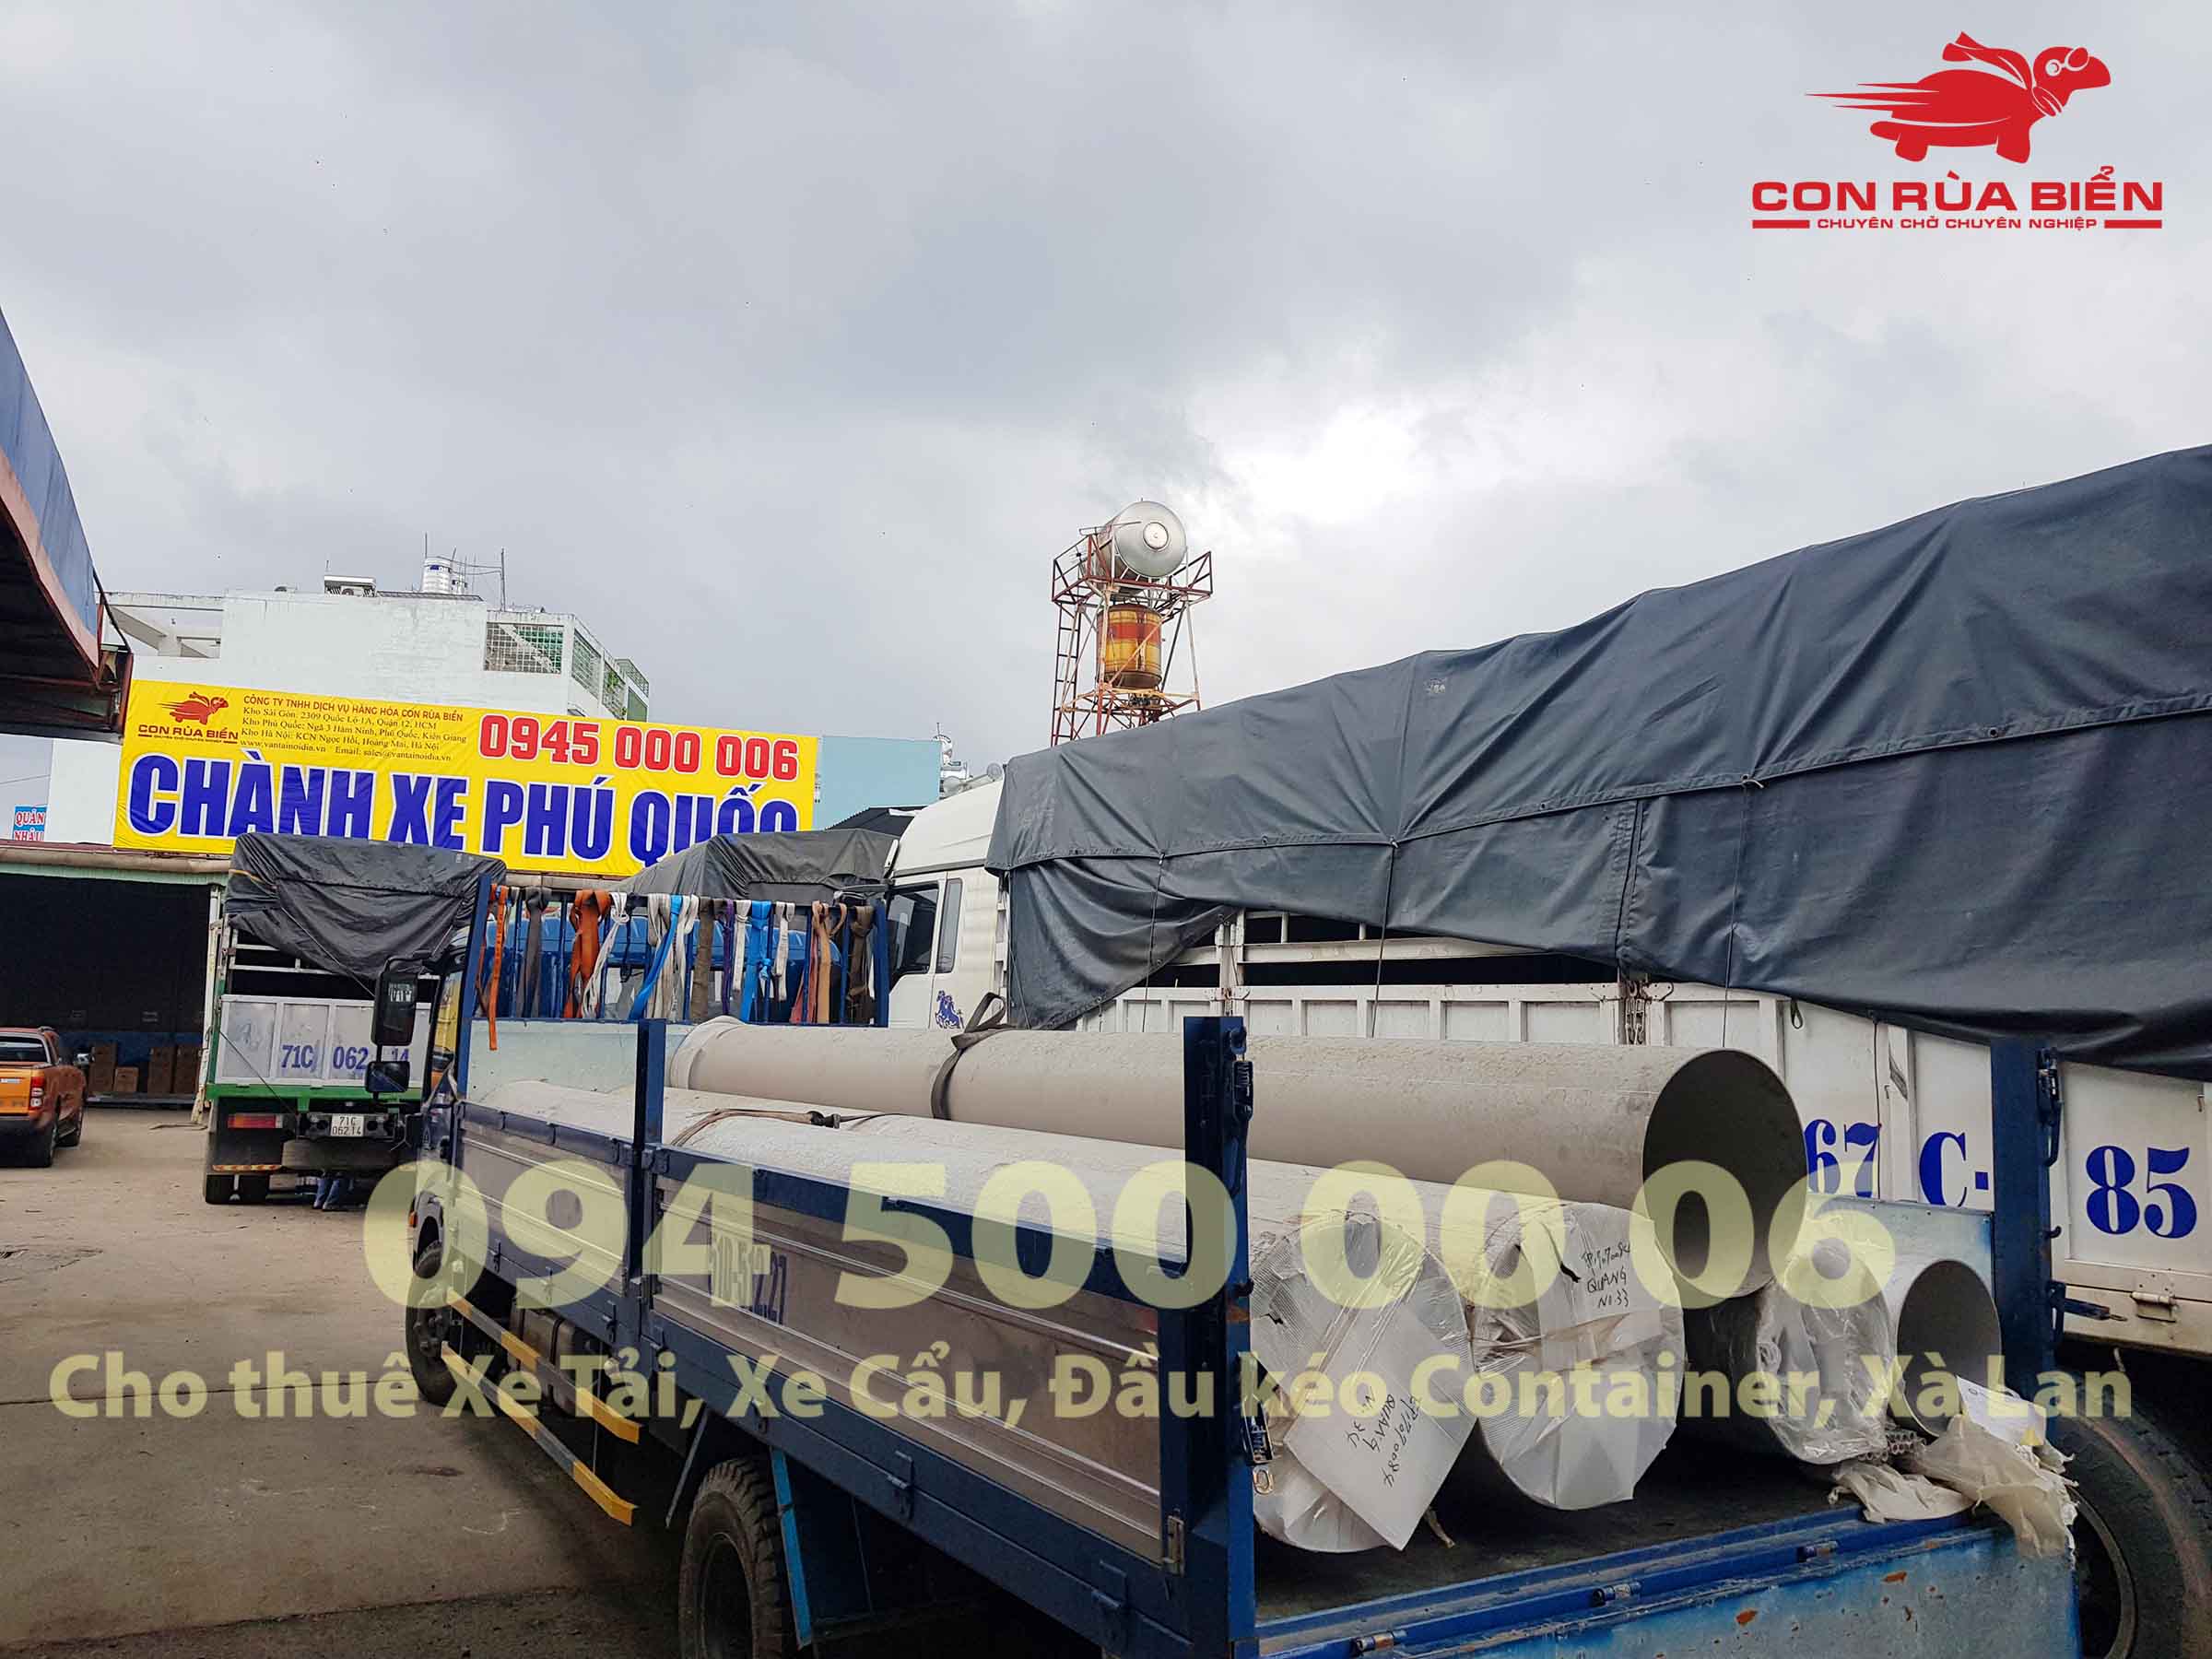 Chành xe đi Phú Quốc, Công ty Con Rùa Biển đang xếp hàng từ Kho HCM lên xe tải để vận chuyển hàng hóa đi Phú Quốc